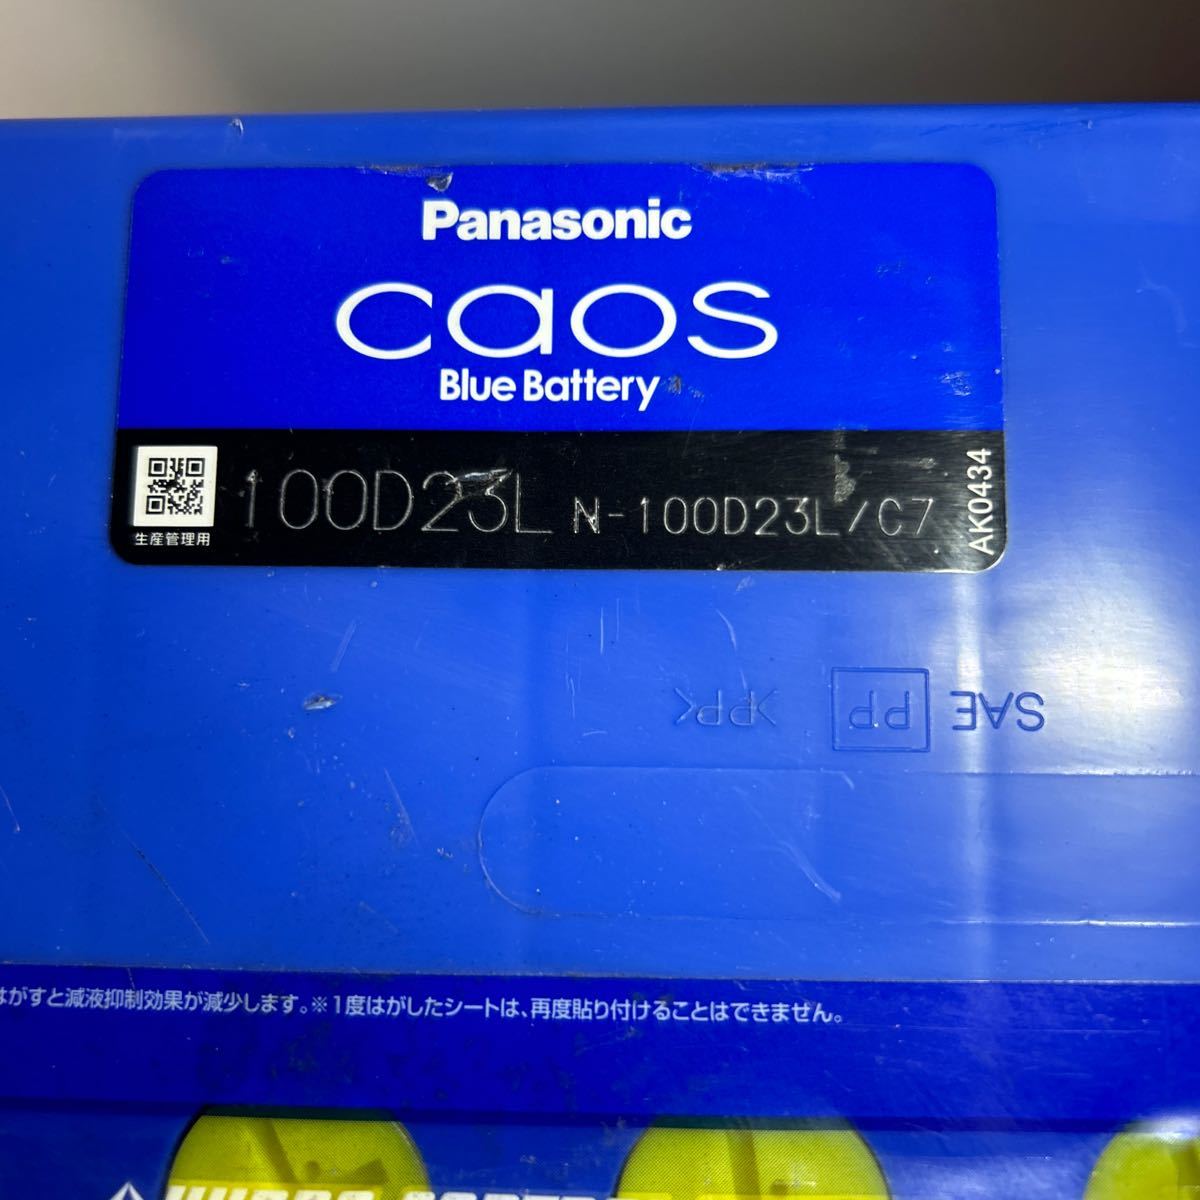 中古バッテリー　Panasonic Caos ブルーバッテリー 100D23L_画像4